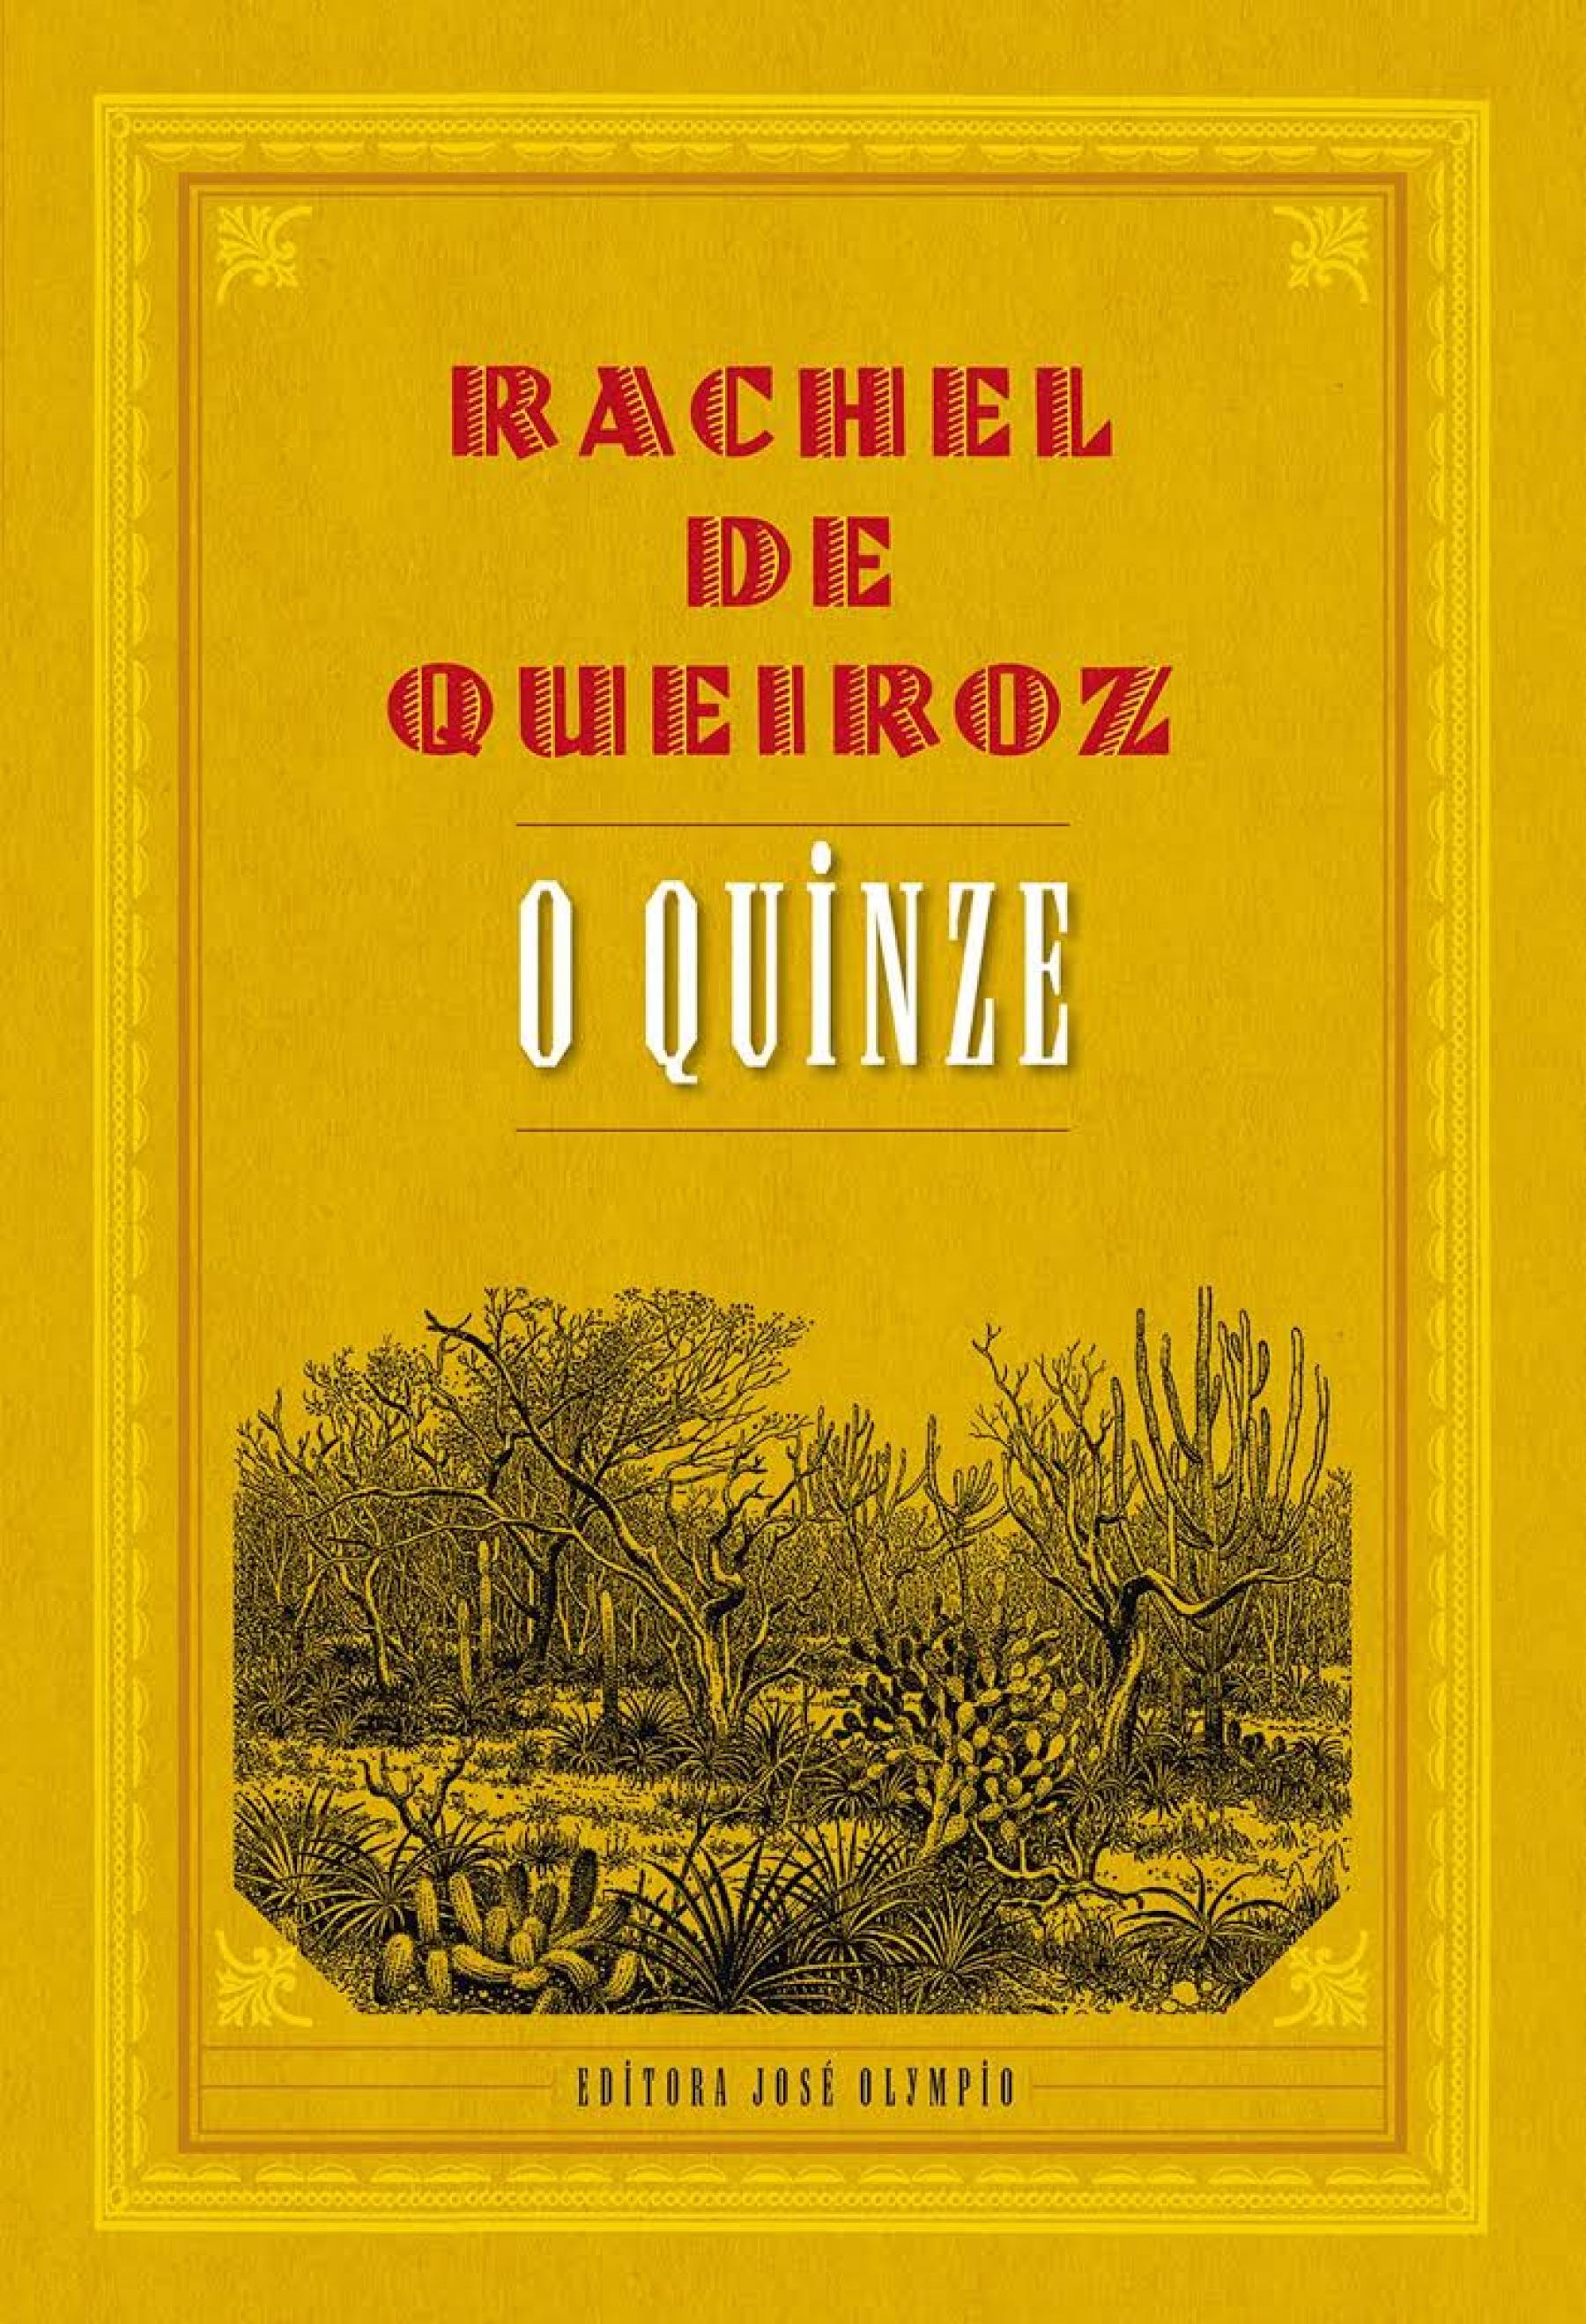 Rachel de Queiroz